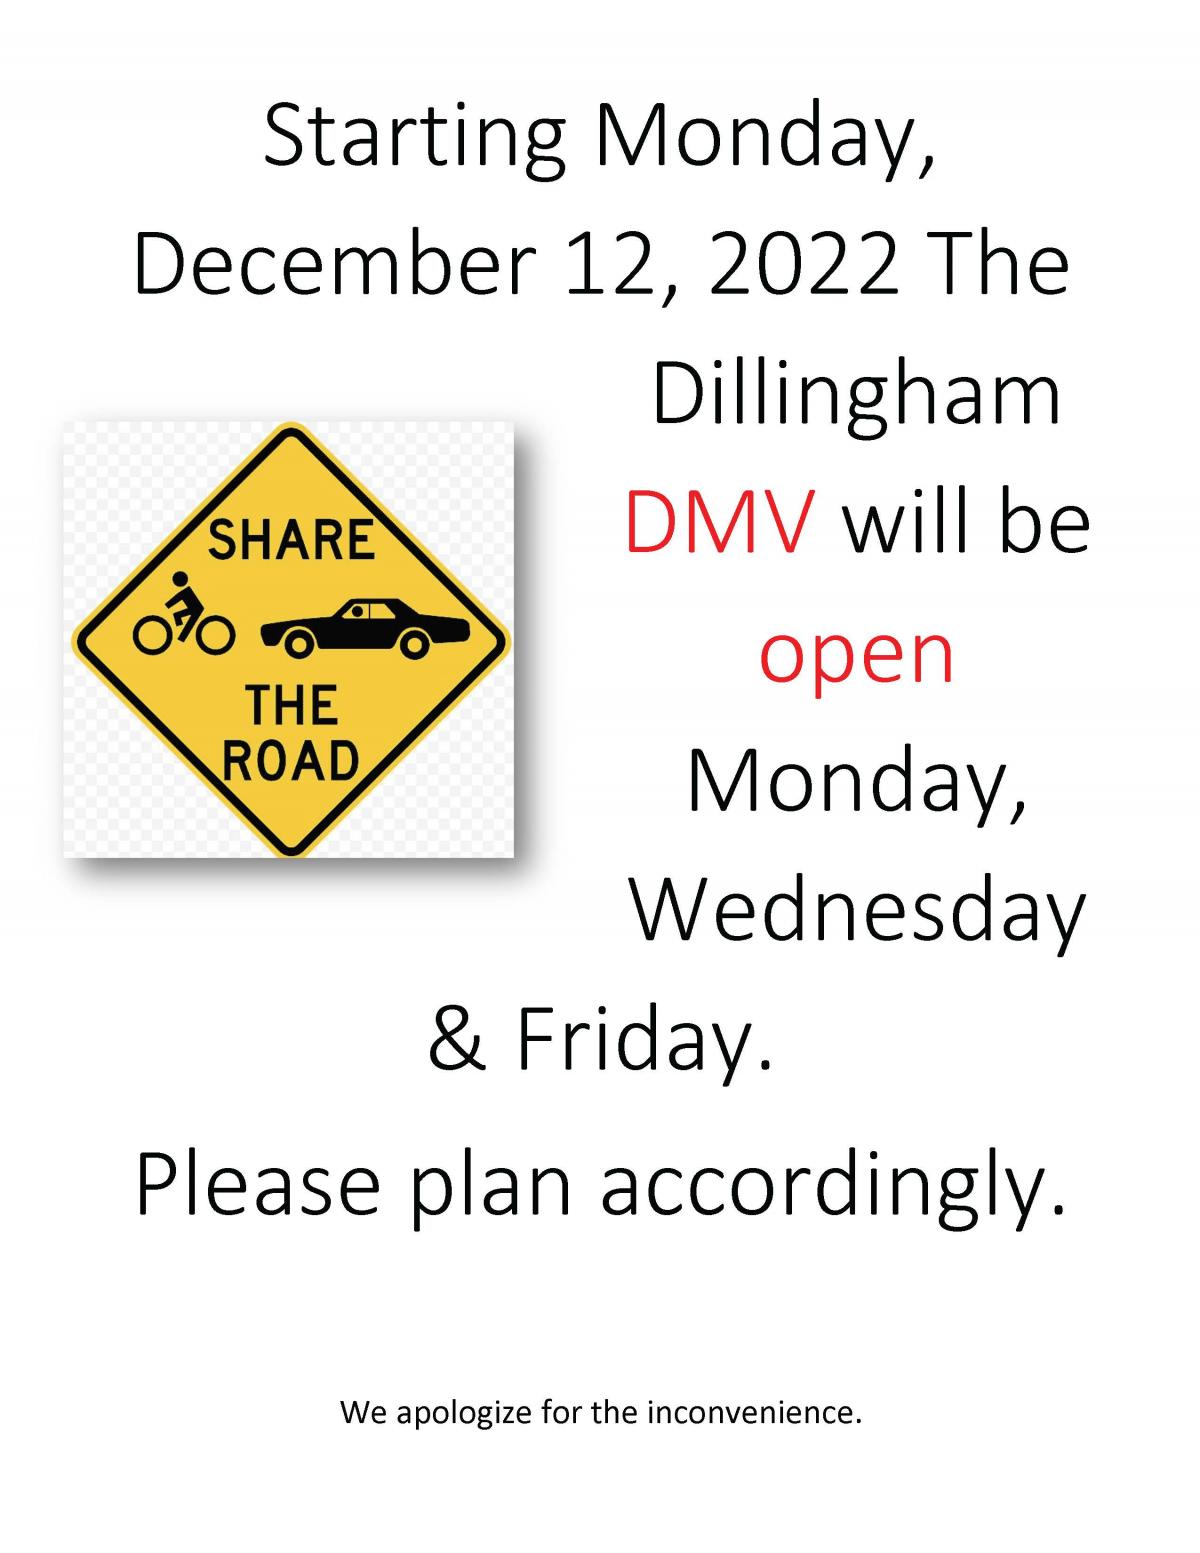 New Schedule for DMV